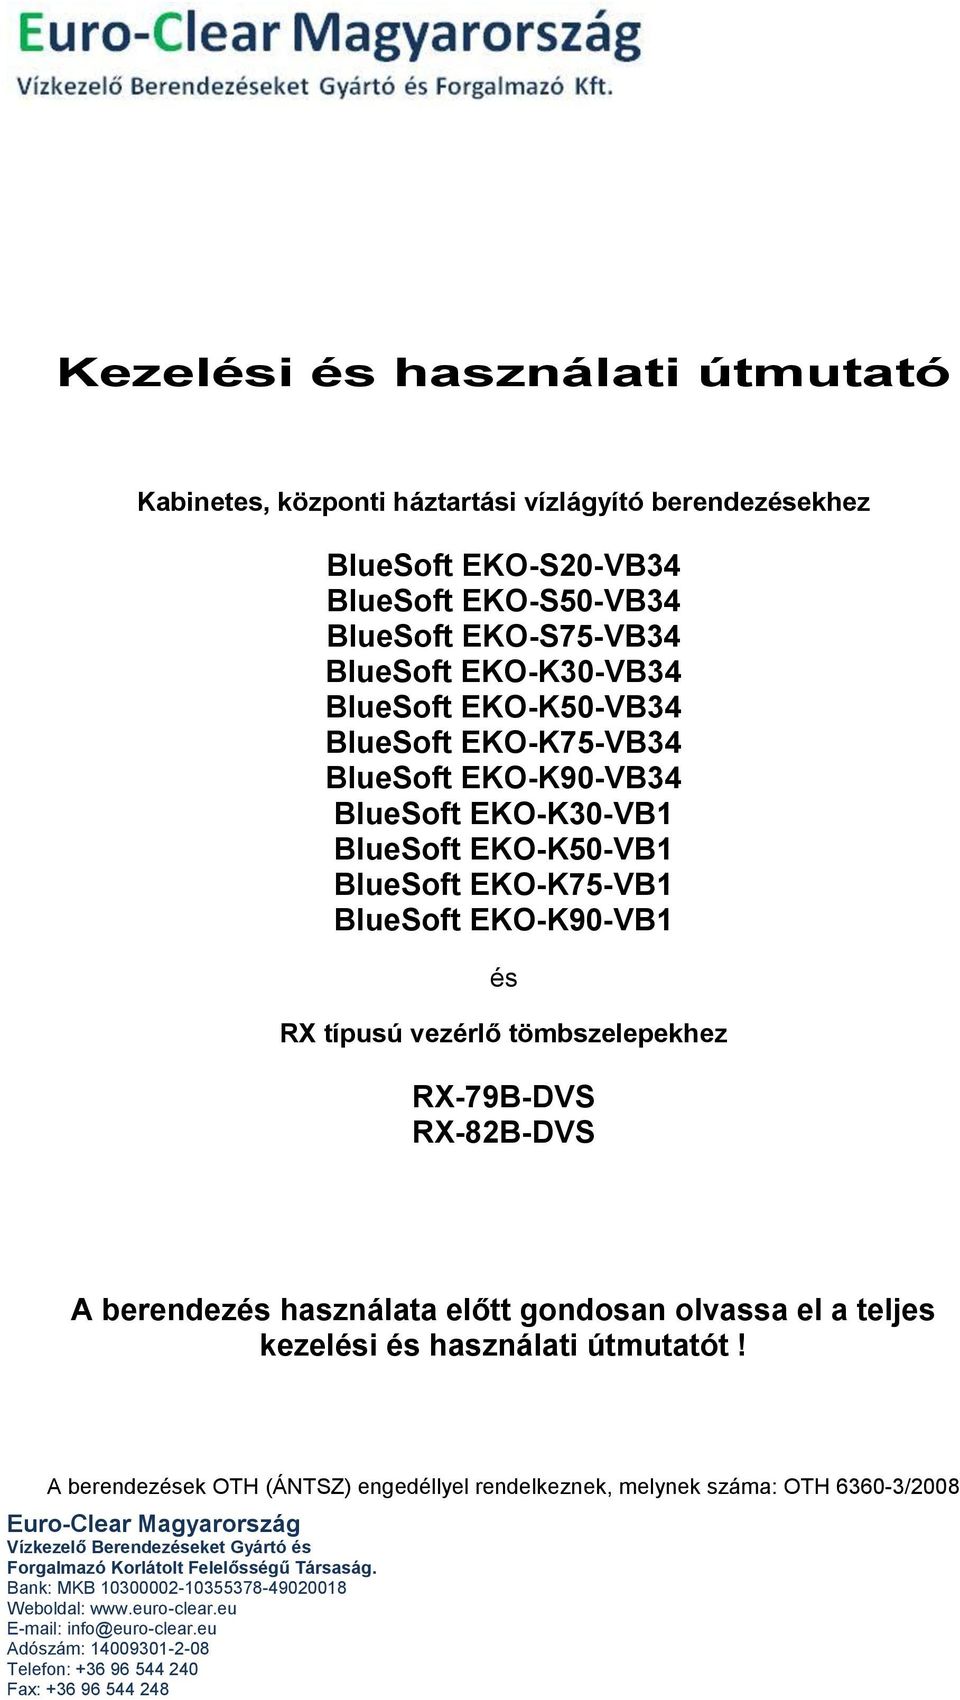 BlueSoft EKO-K75-VB1 BlueSoft EKO-K90-VB1 és RX típusú vezérlő tömbszelepekhez RX-79B-DVS RX-82B-DVS A berendezés használata előtt gondosan